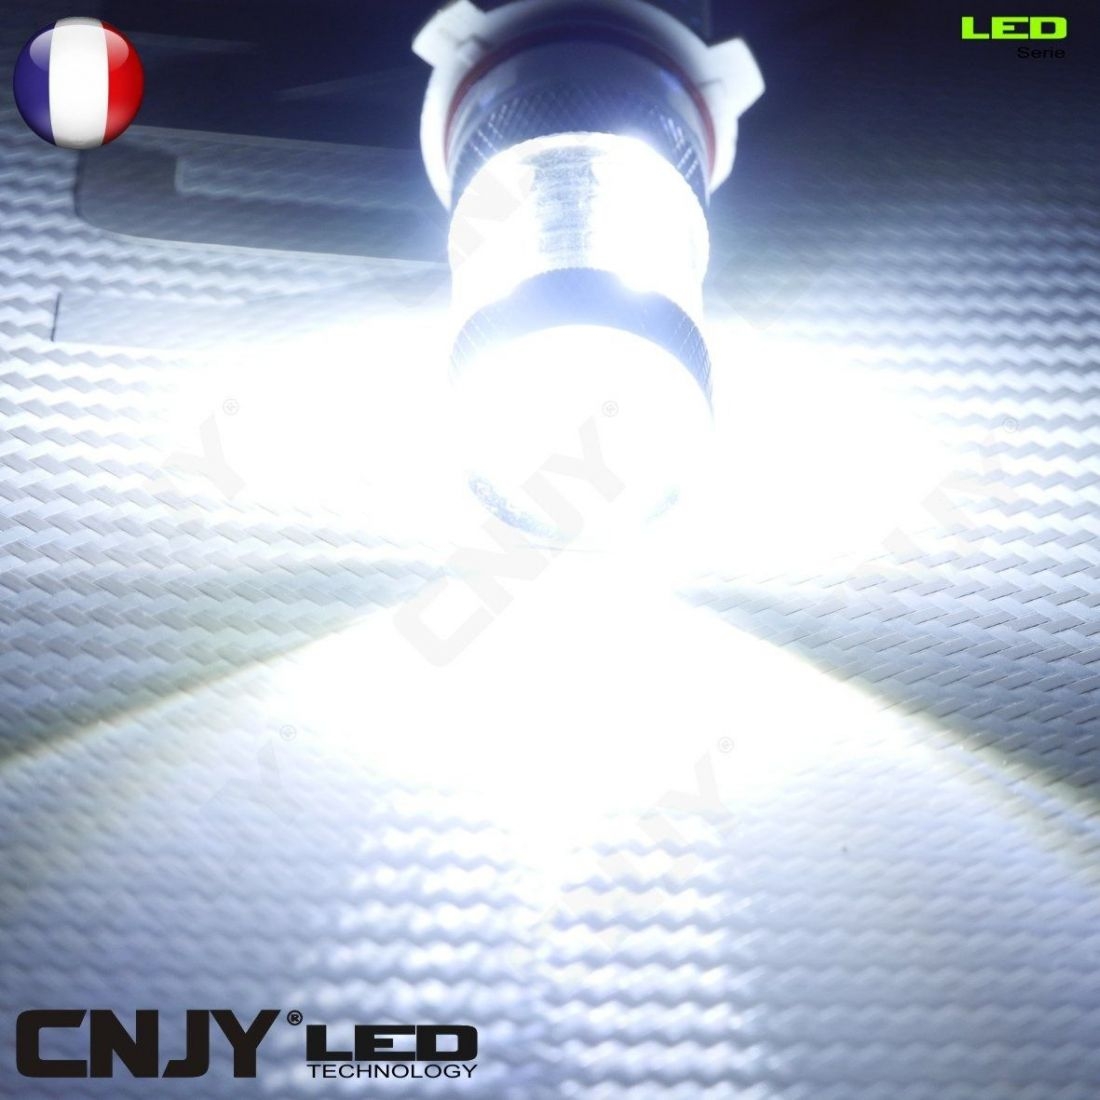 Ampoule H7 LED spéciale Phares Lenticulaires - 10 000 Lumens.